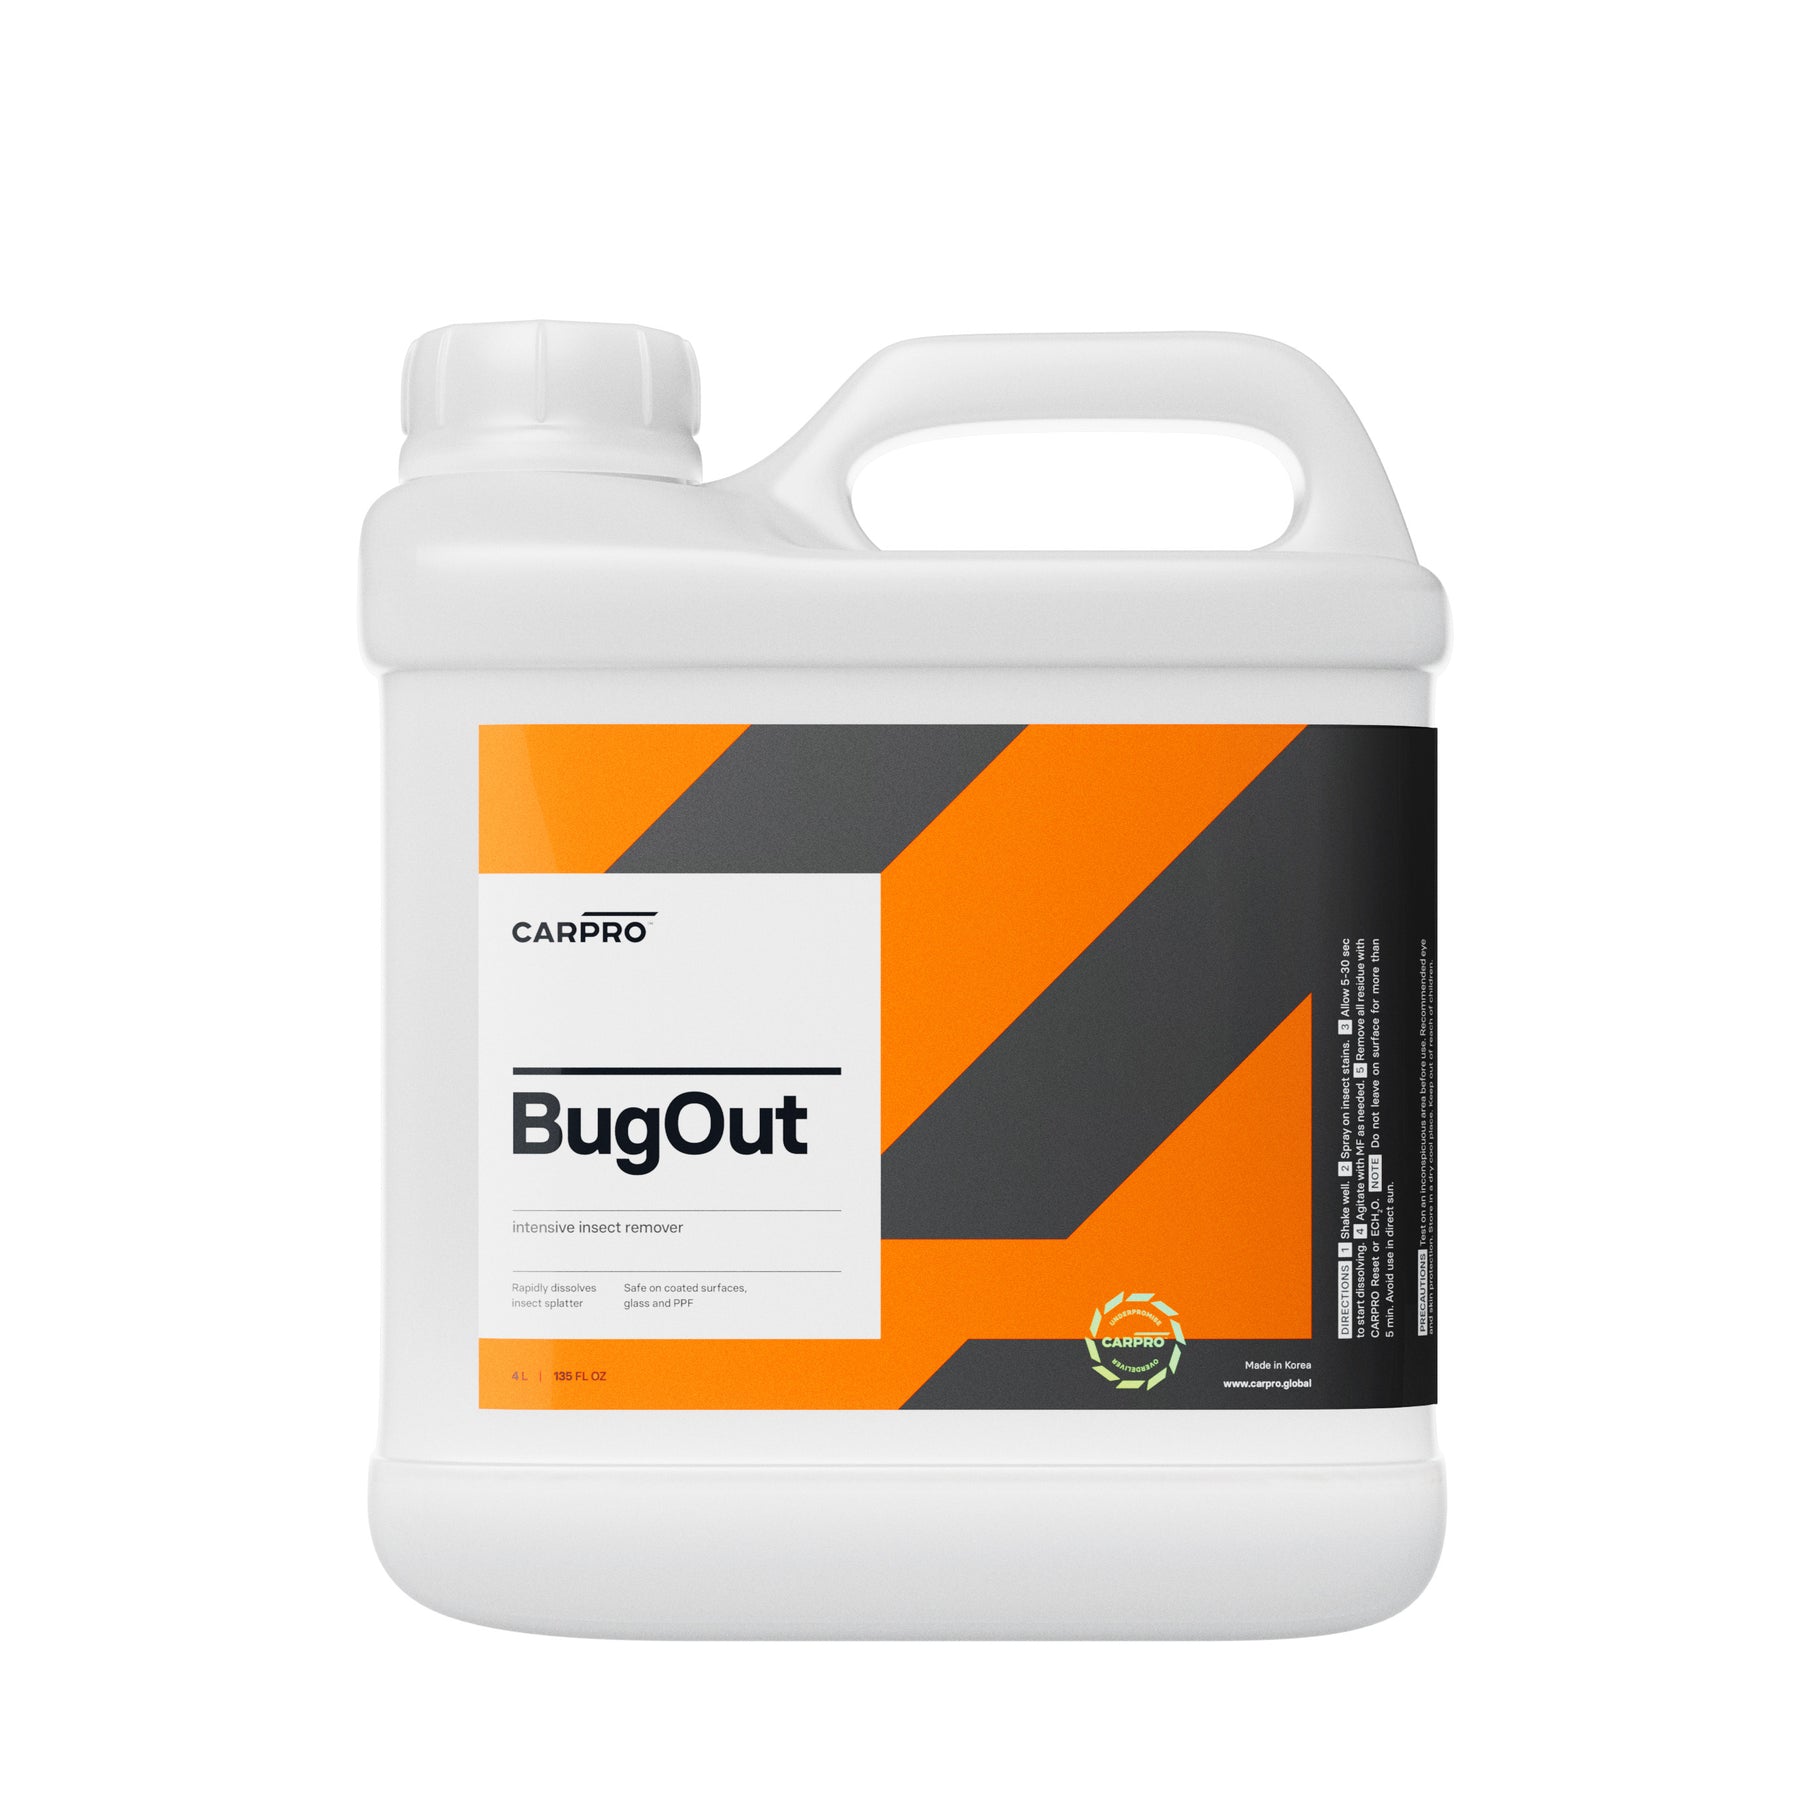 Tanica di detergente CARPRO Bug Out, formulato per rimuovere rapidamente e in modo efficace i residui di insetti dalla carrozzeria del veicolo, ideale per detailers professionisti.